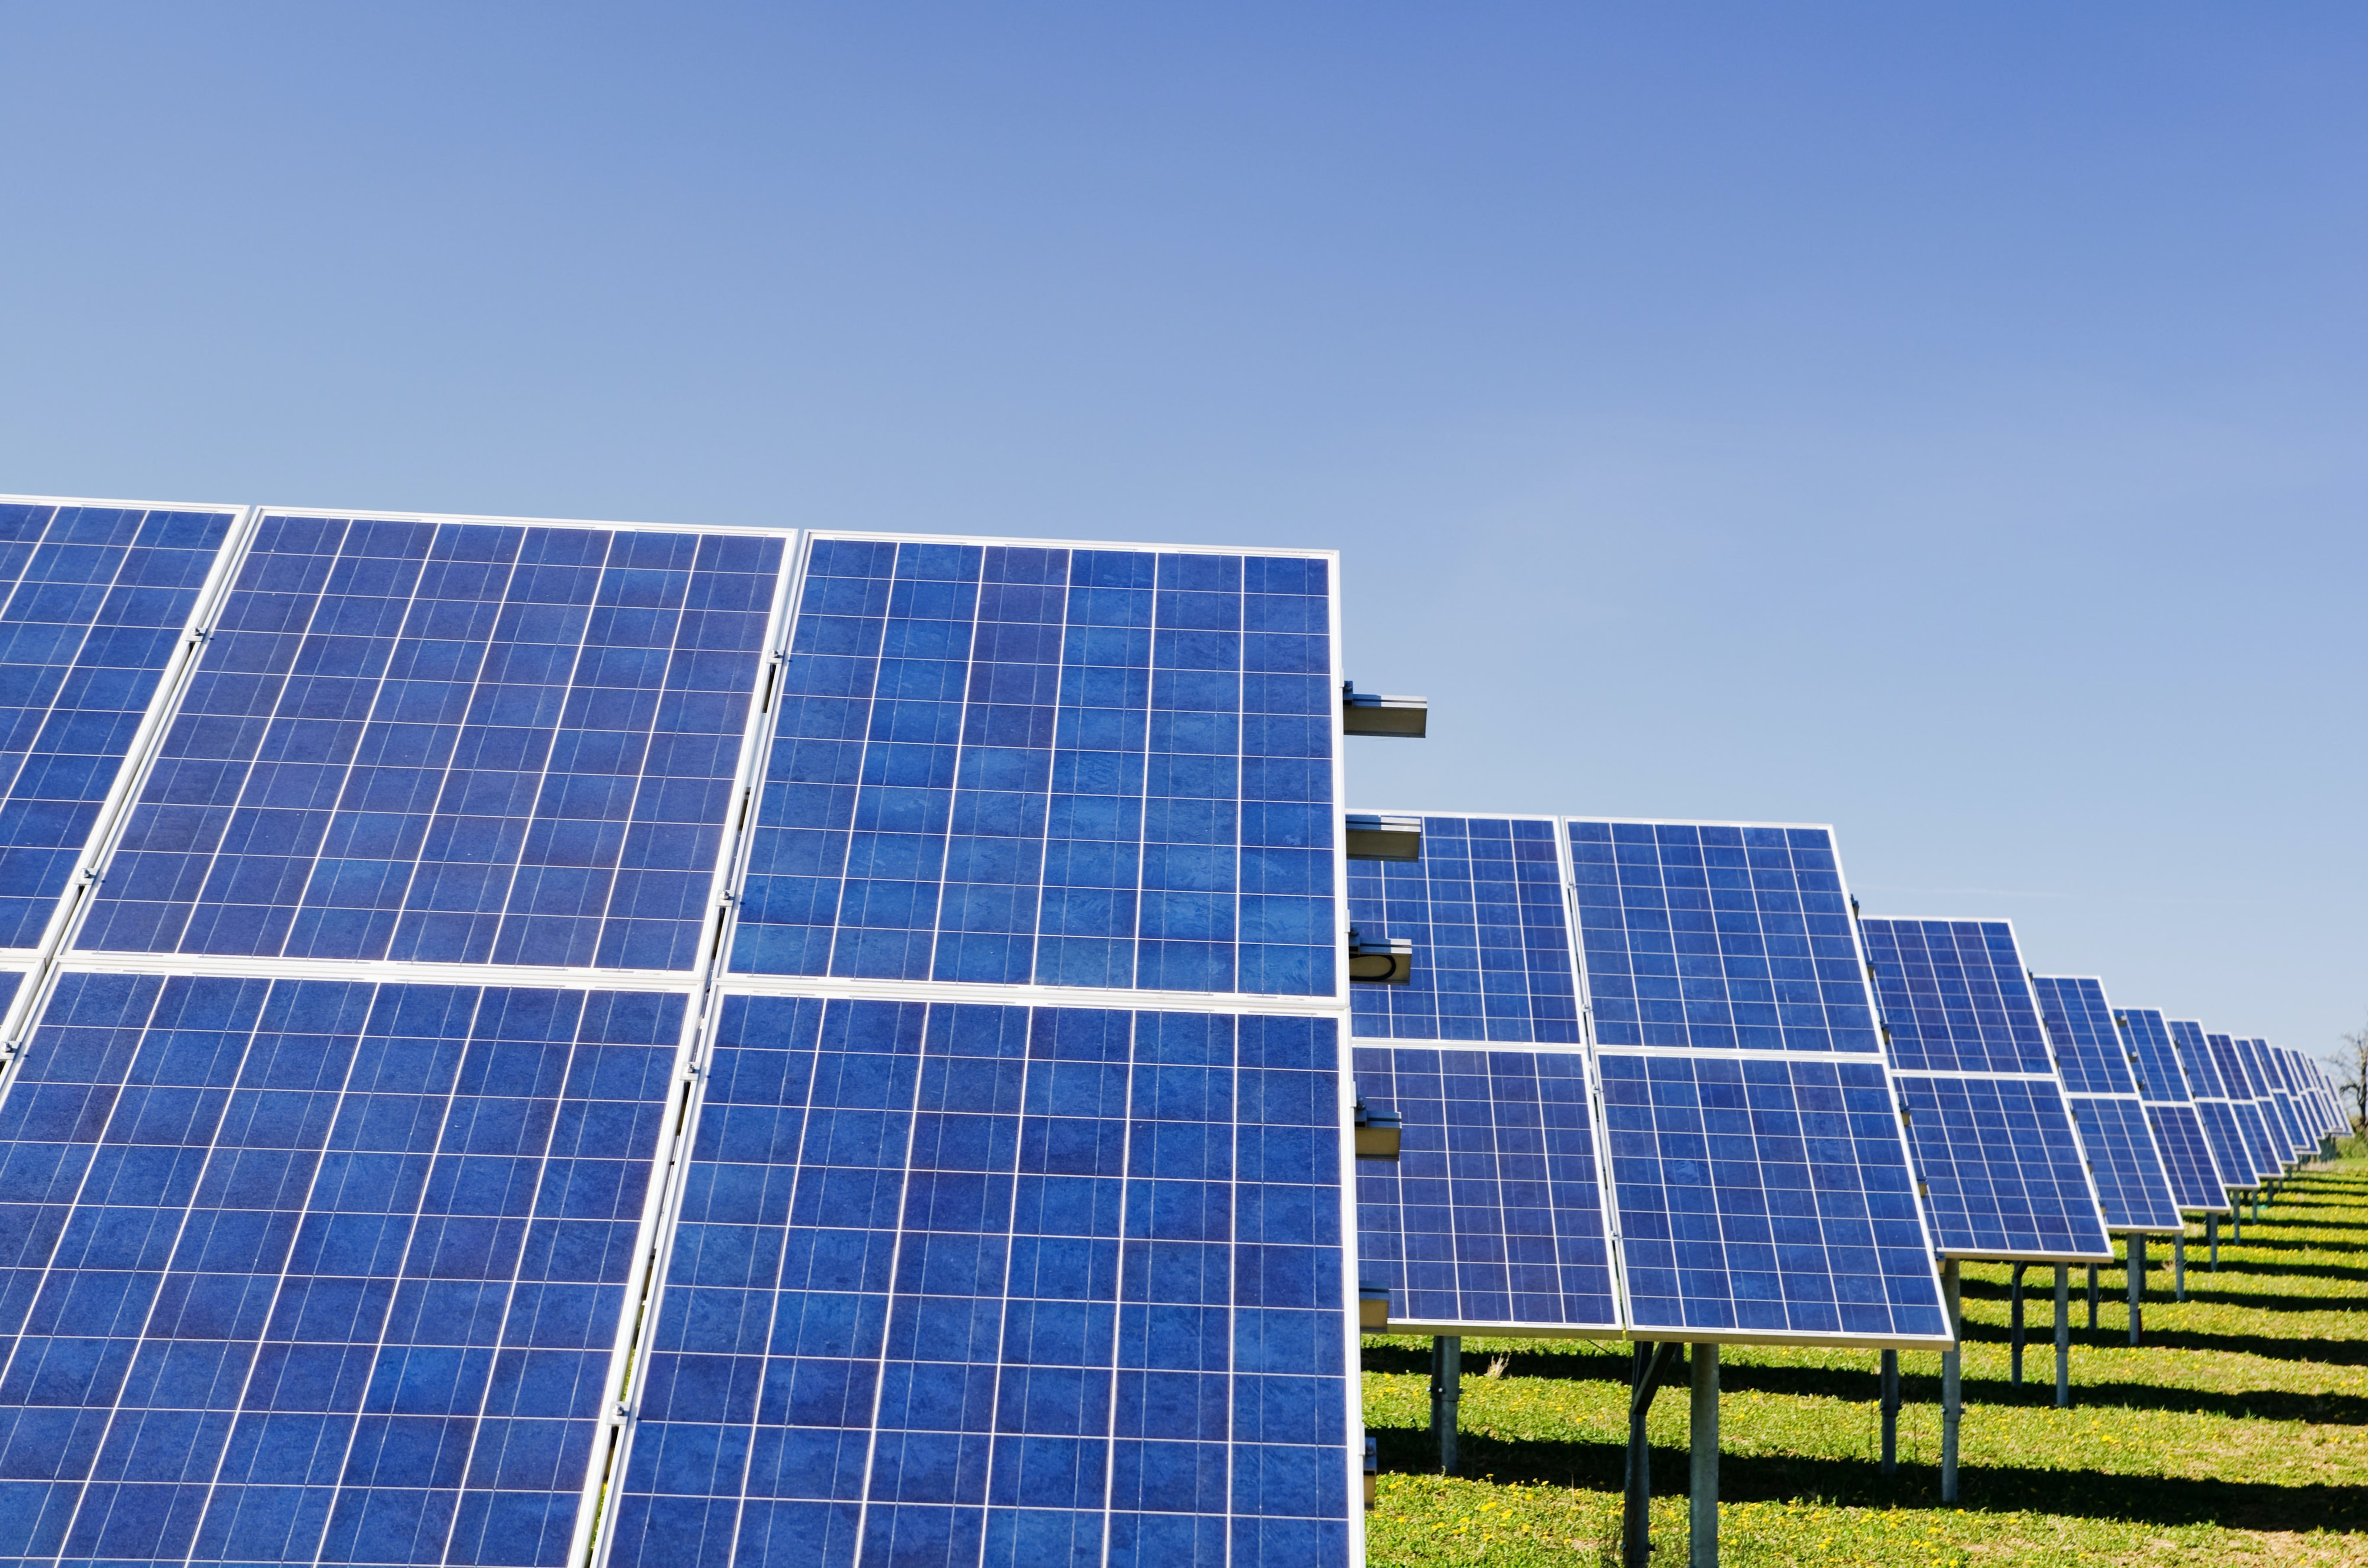 Solar Company Array Technologies Raises $1.05B In Upsized IPO